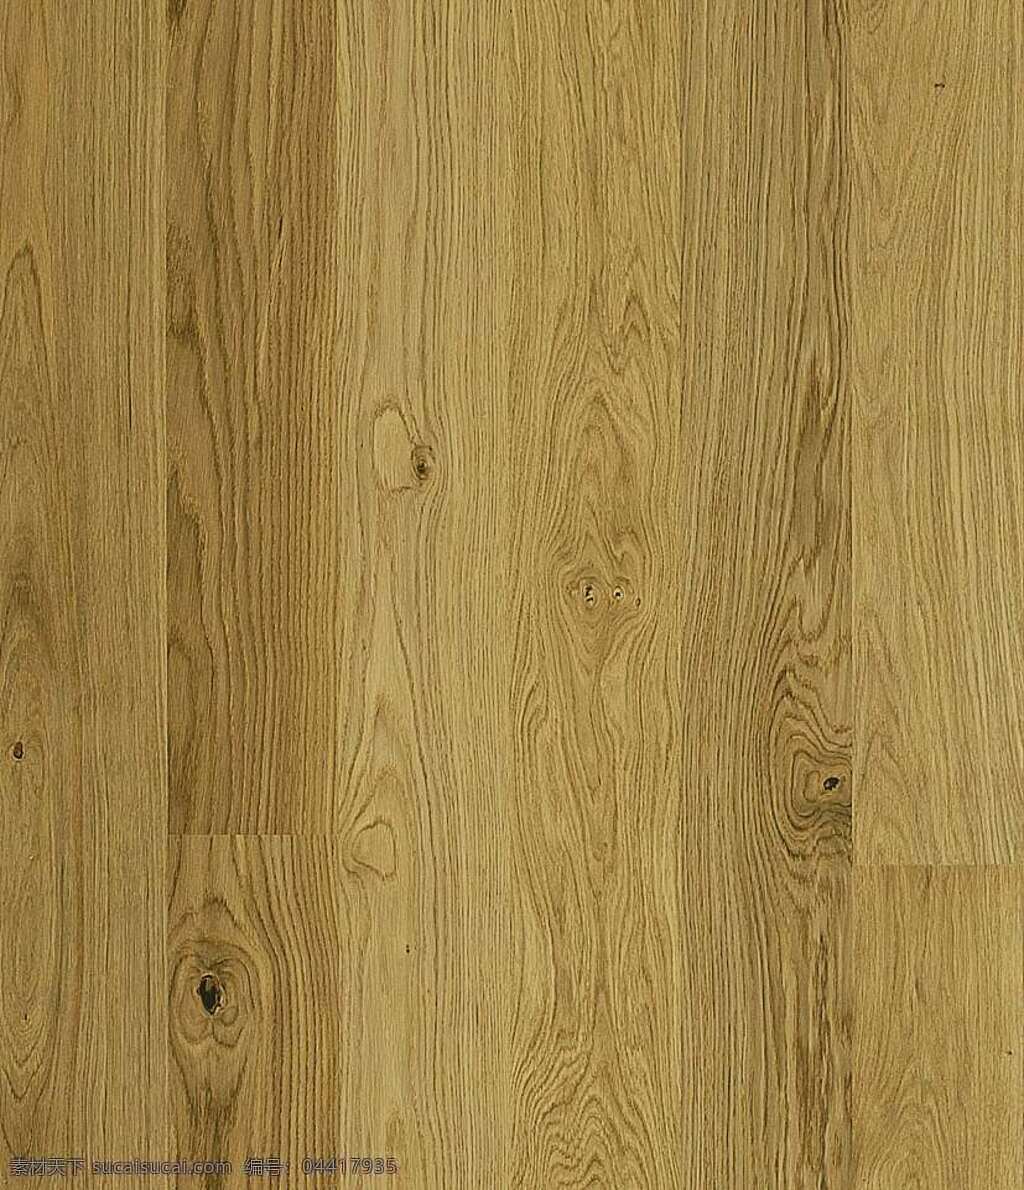 520 木地板 贴图 室内设计 木材贴图 木地板贴图 木地板效果图 木地板材质 地板设计素材